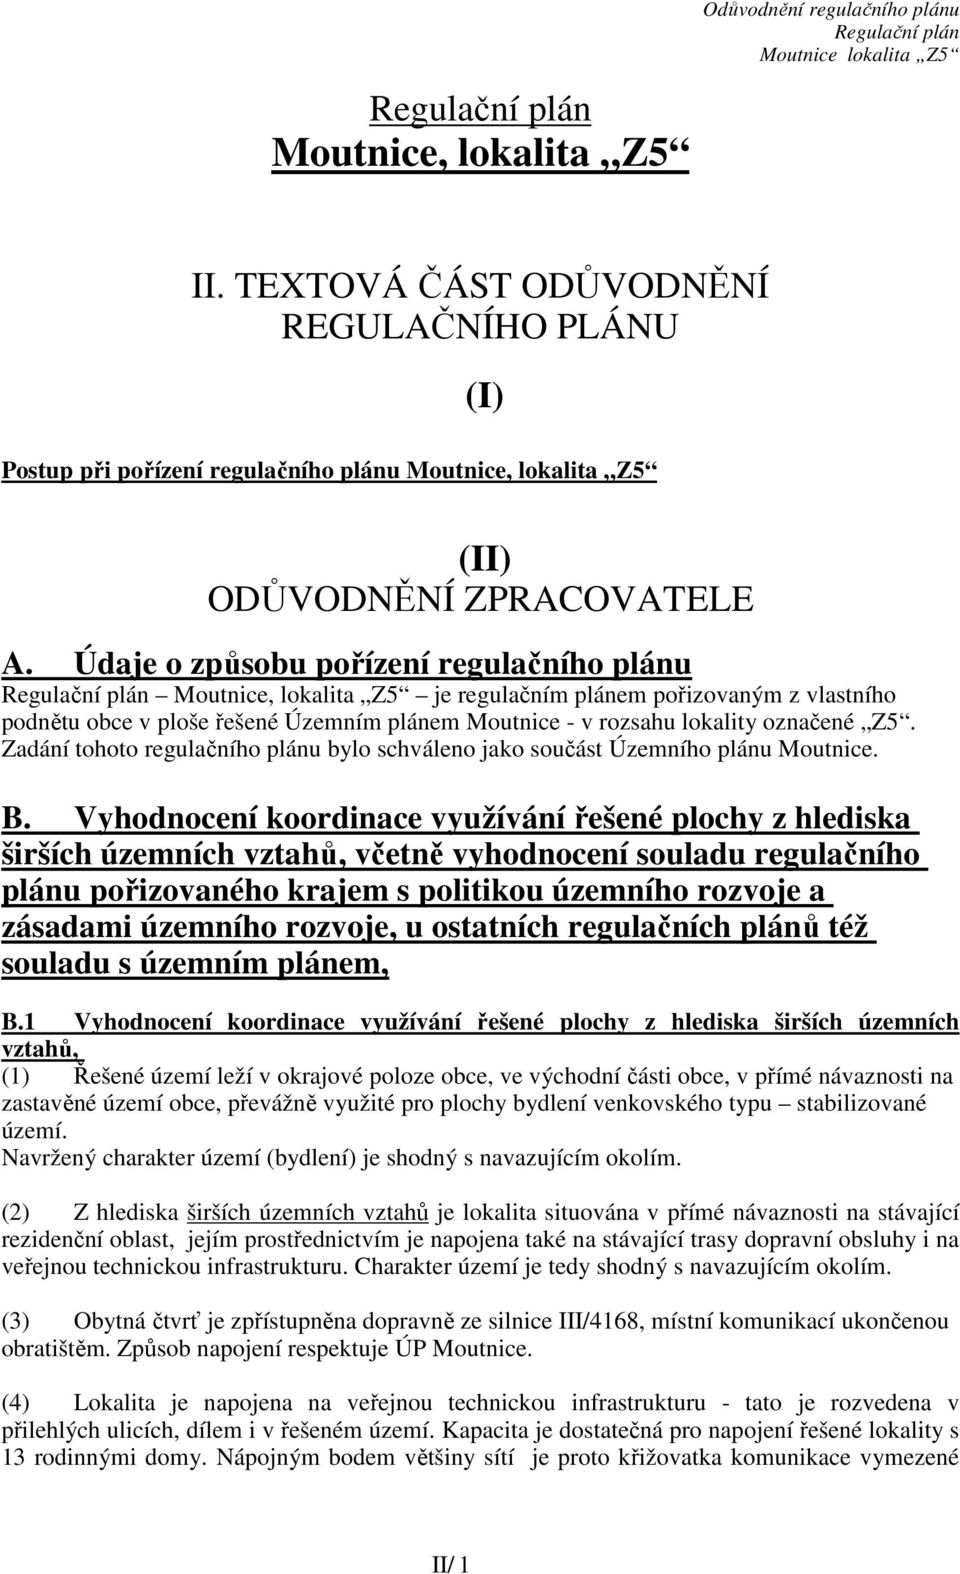 Zadání tohoto regulačního plánu bylo schváleno jako součást Územního plánu Moutnice. B.